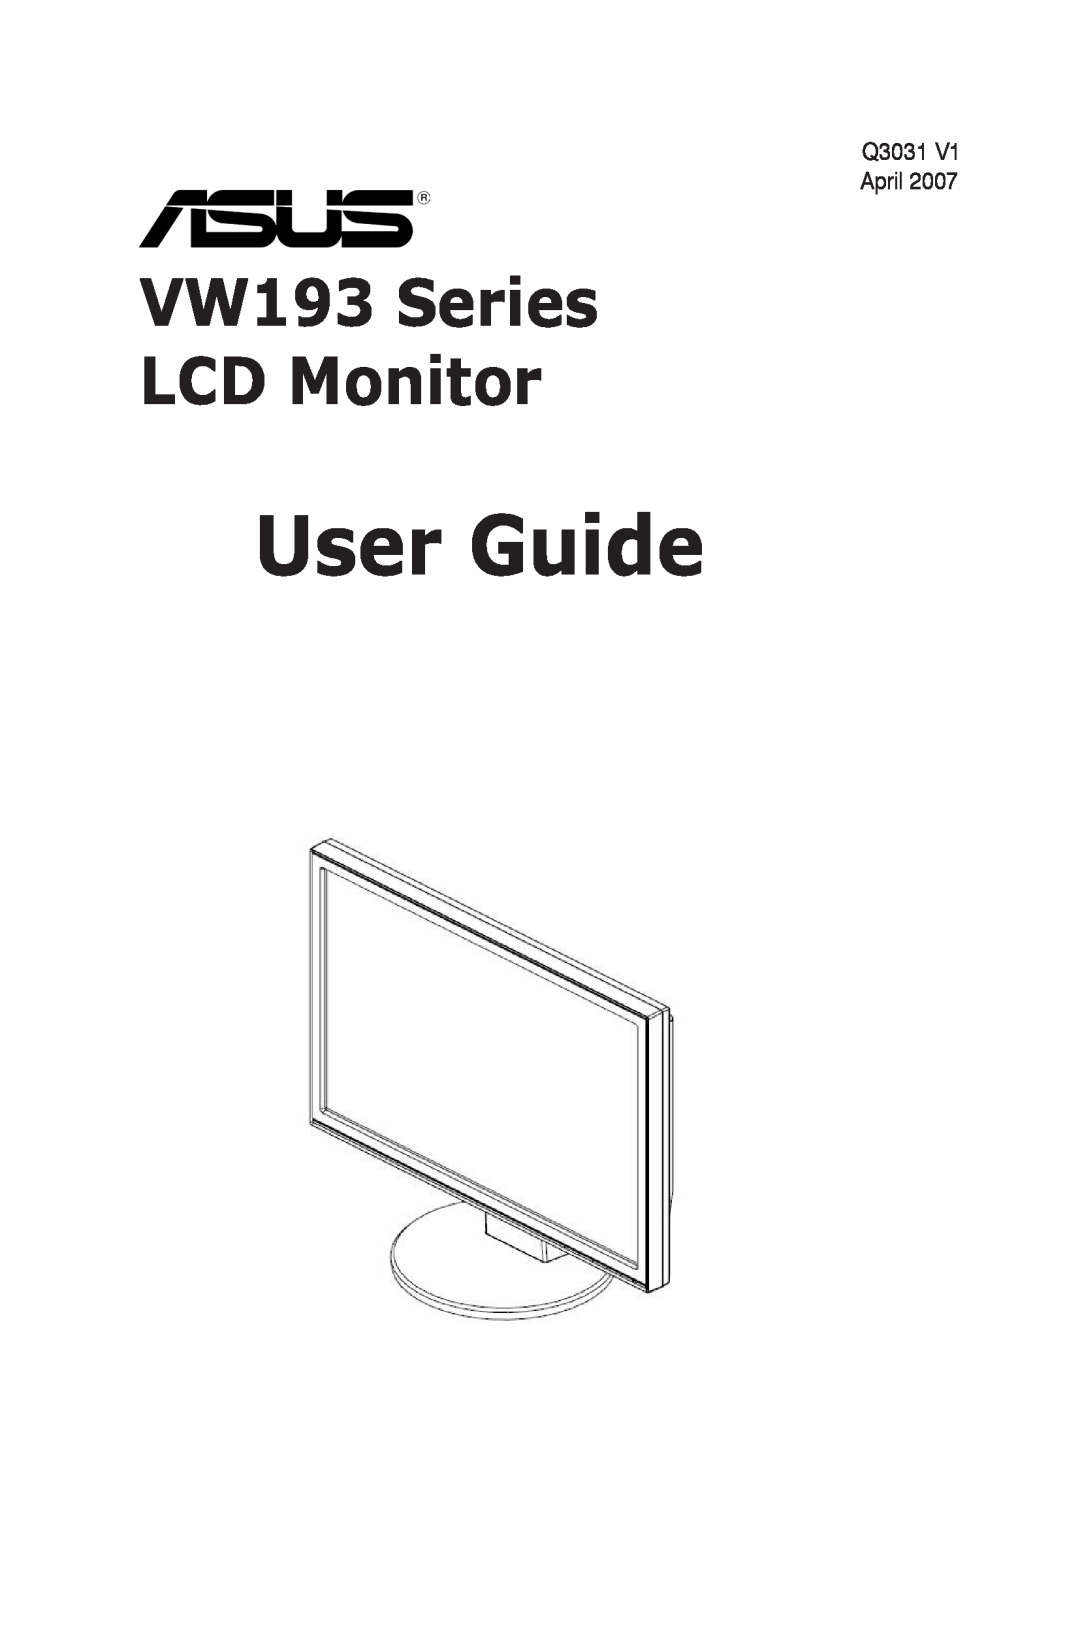 Asus manual User Guide, VW193 Series LCD Monitor 